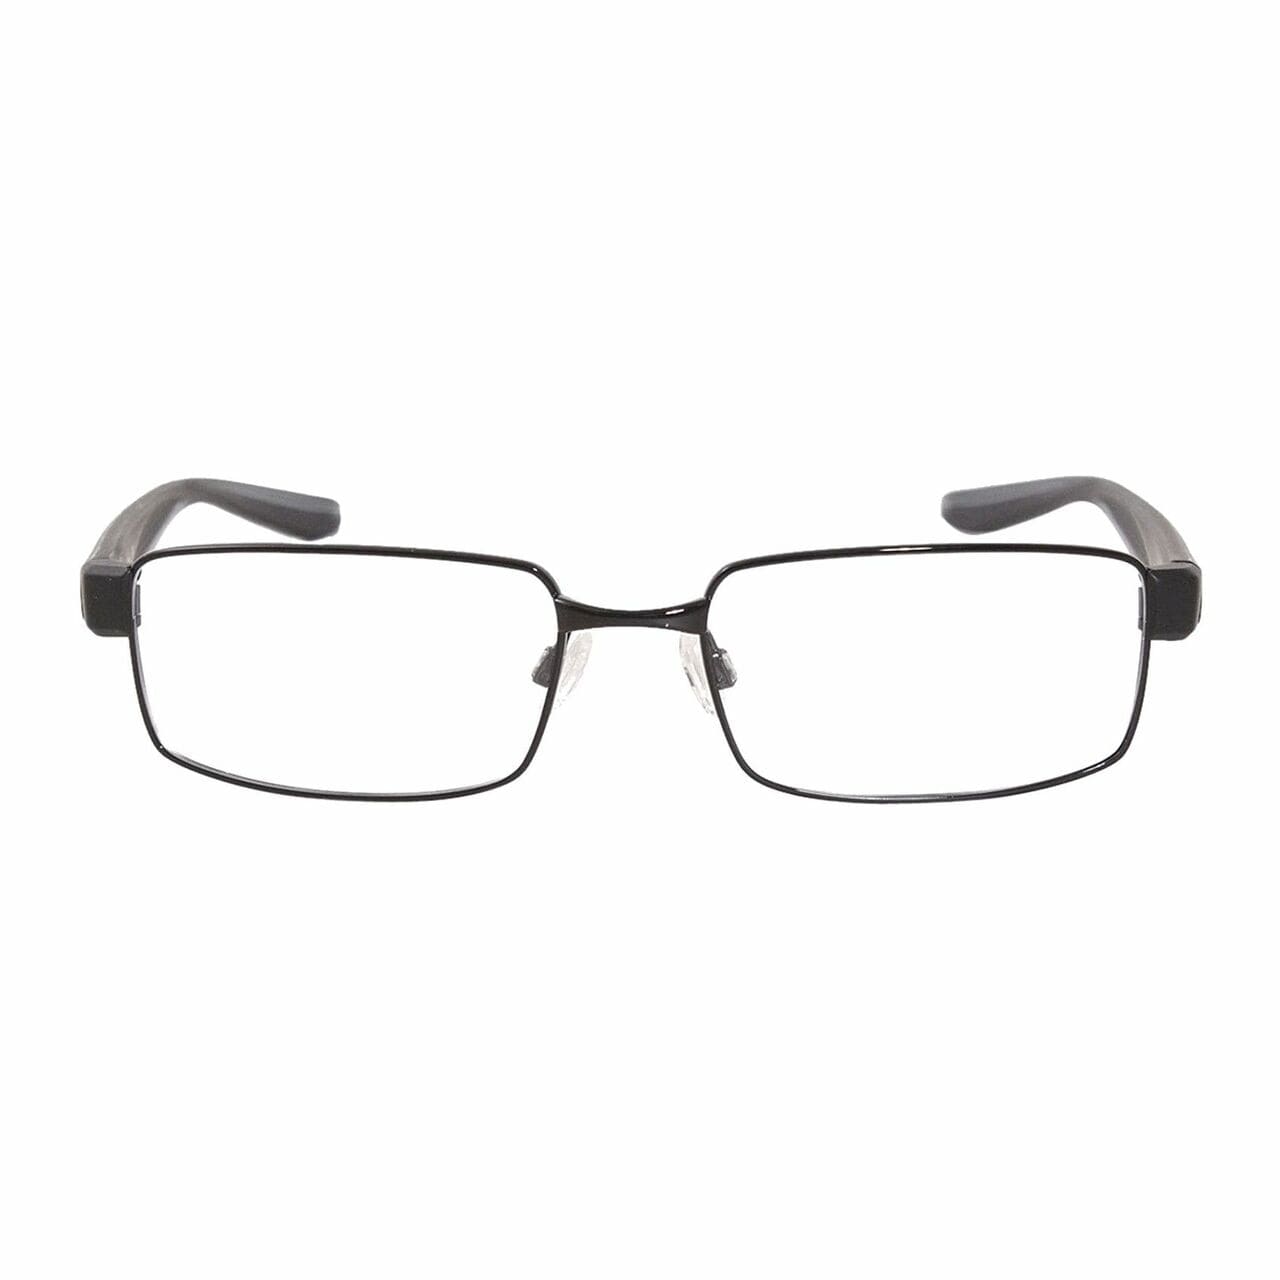 Nike 8171-001 Black Rectangular Men’s Metal Eyeglasses - 